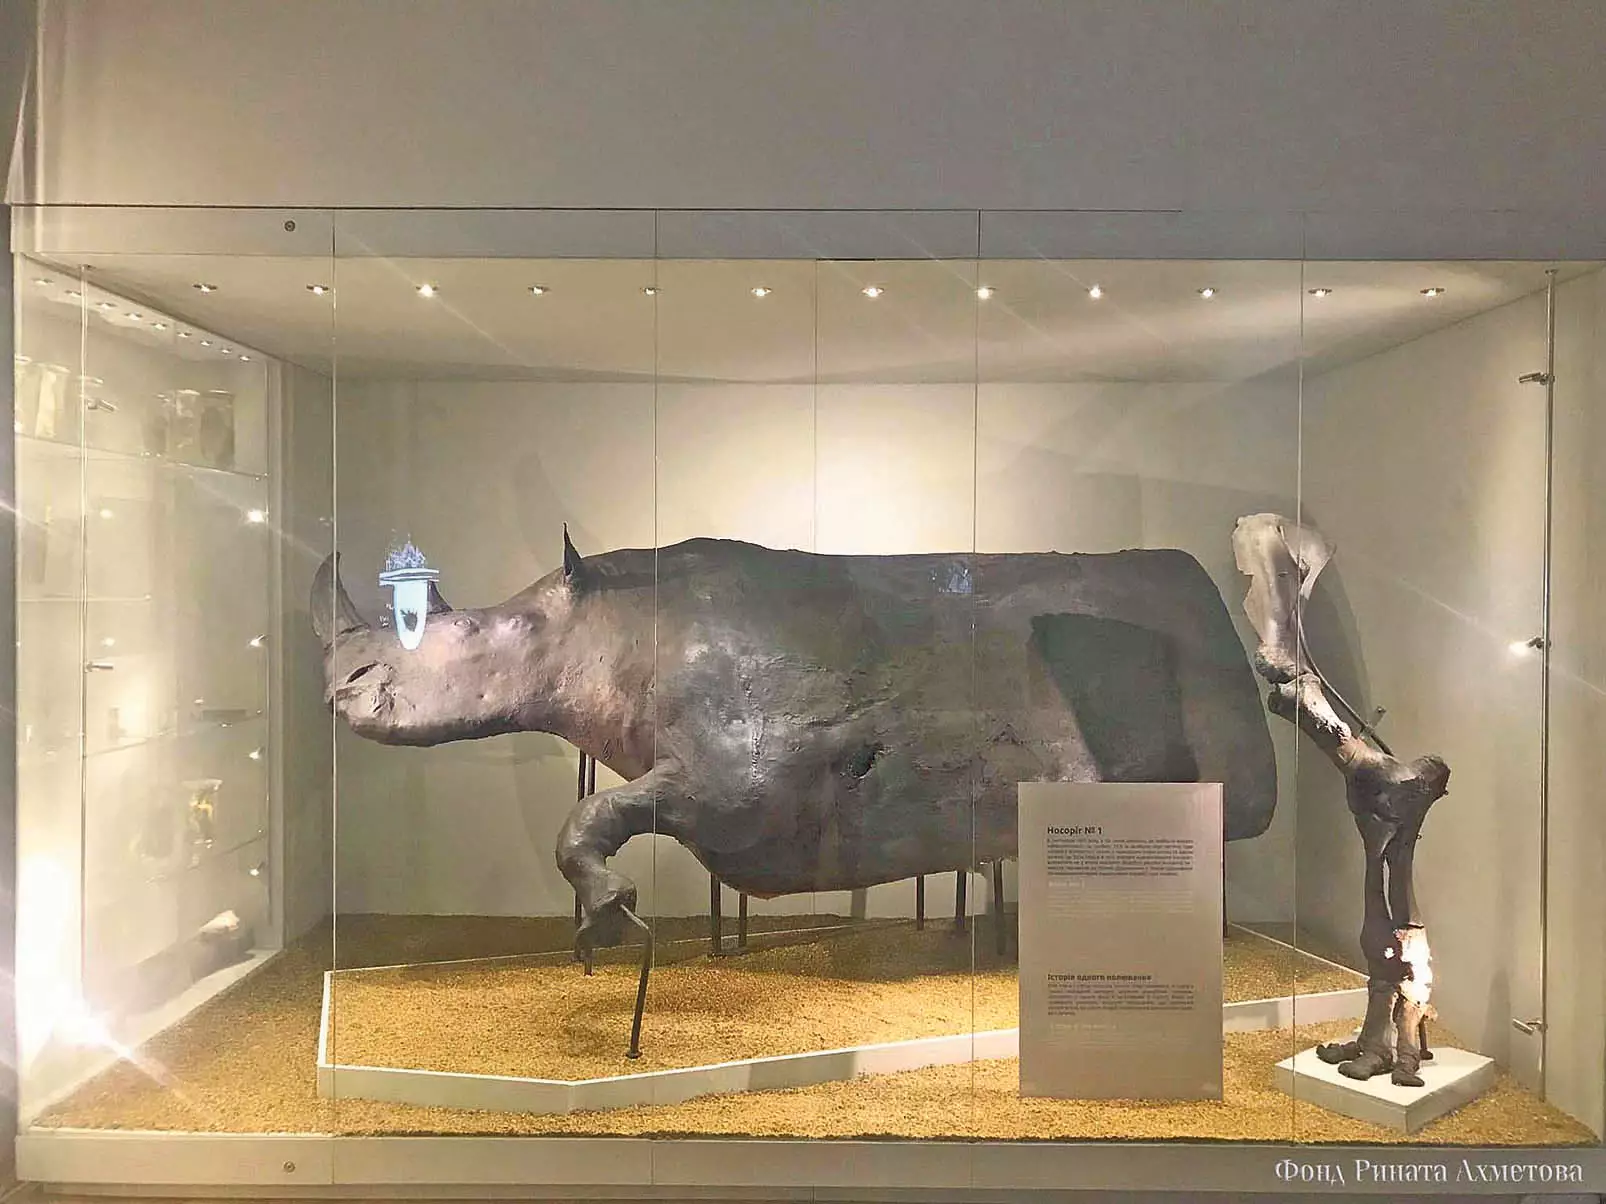 Шерстистый носорог. Хорошо сохранился благодаря тысячелетней озокеритовой 